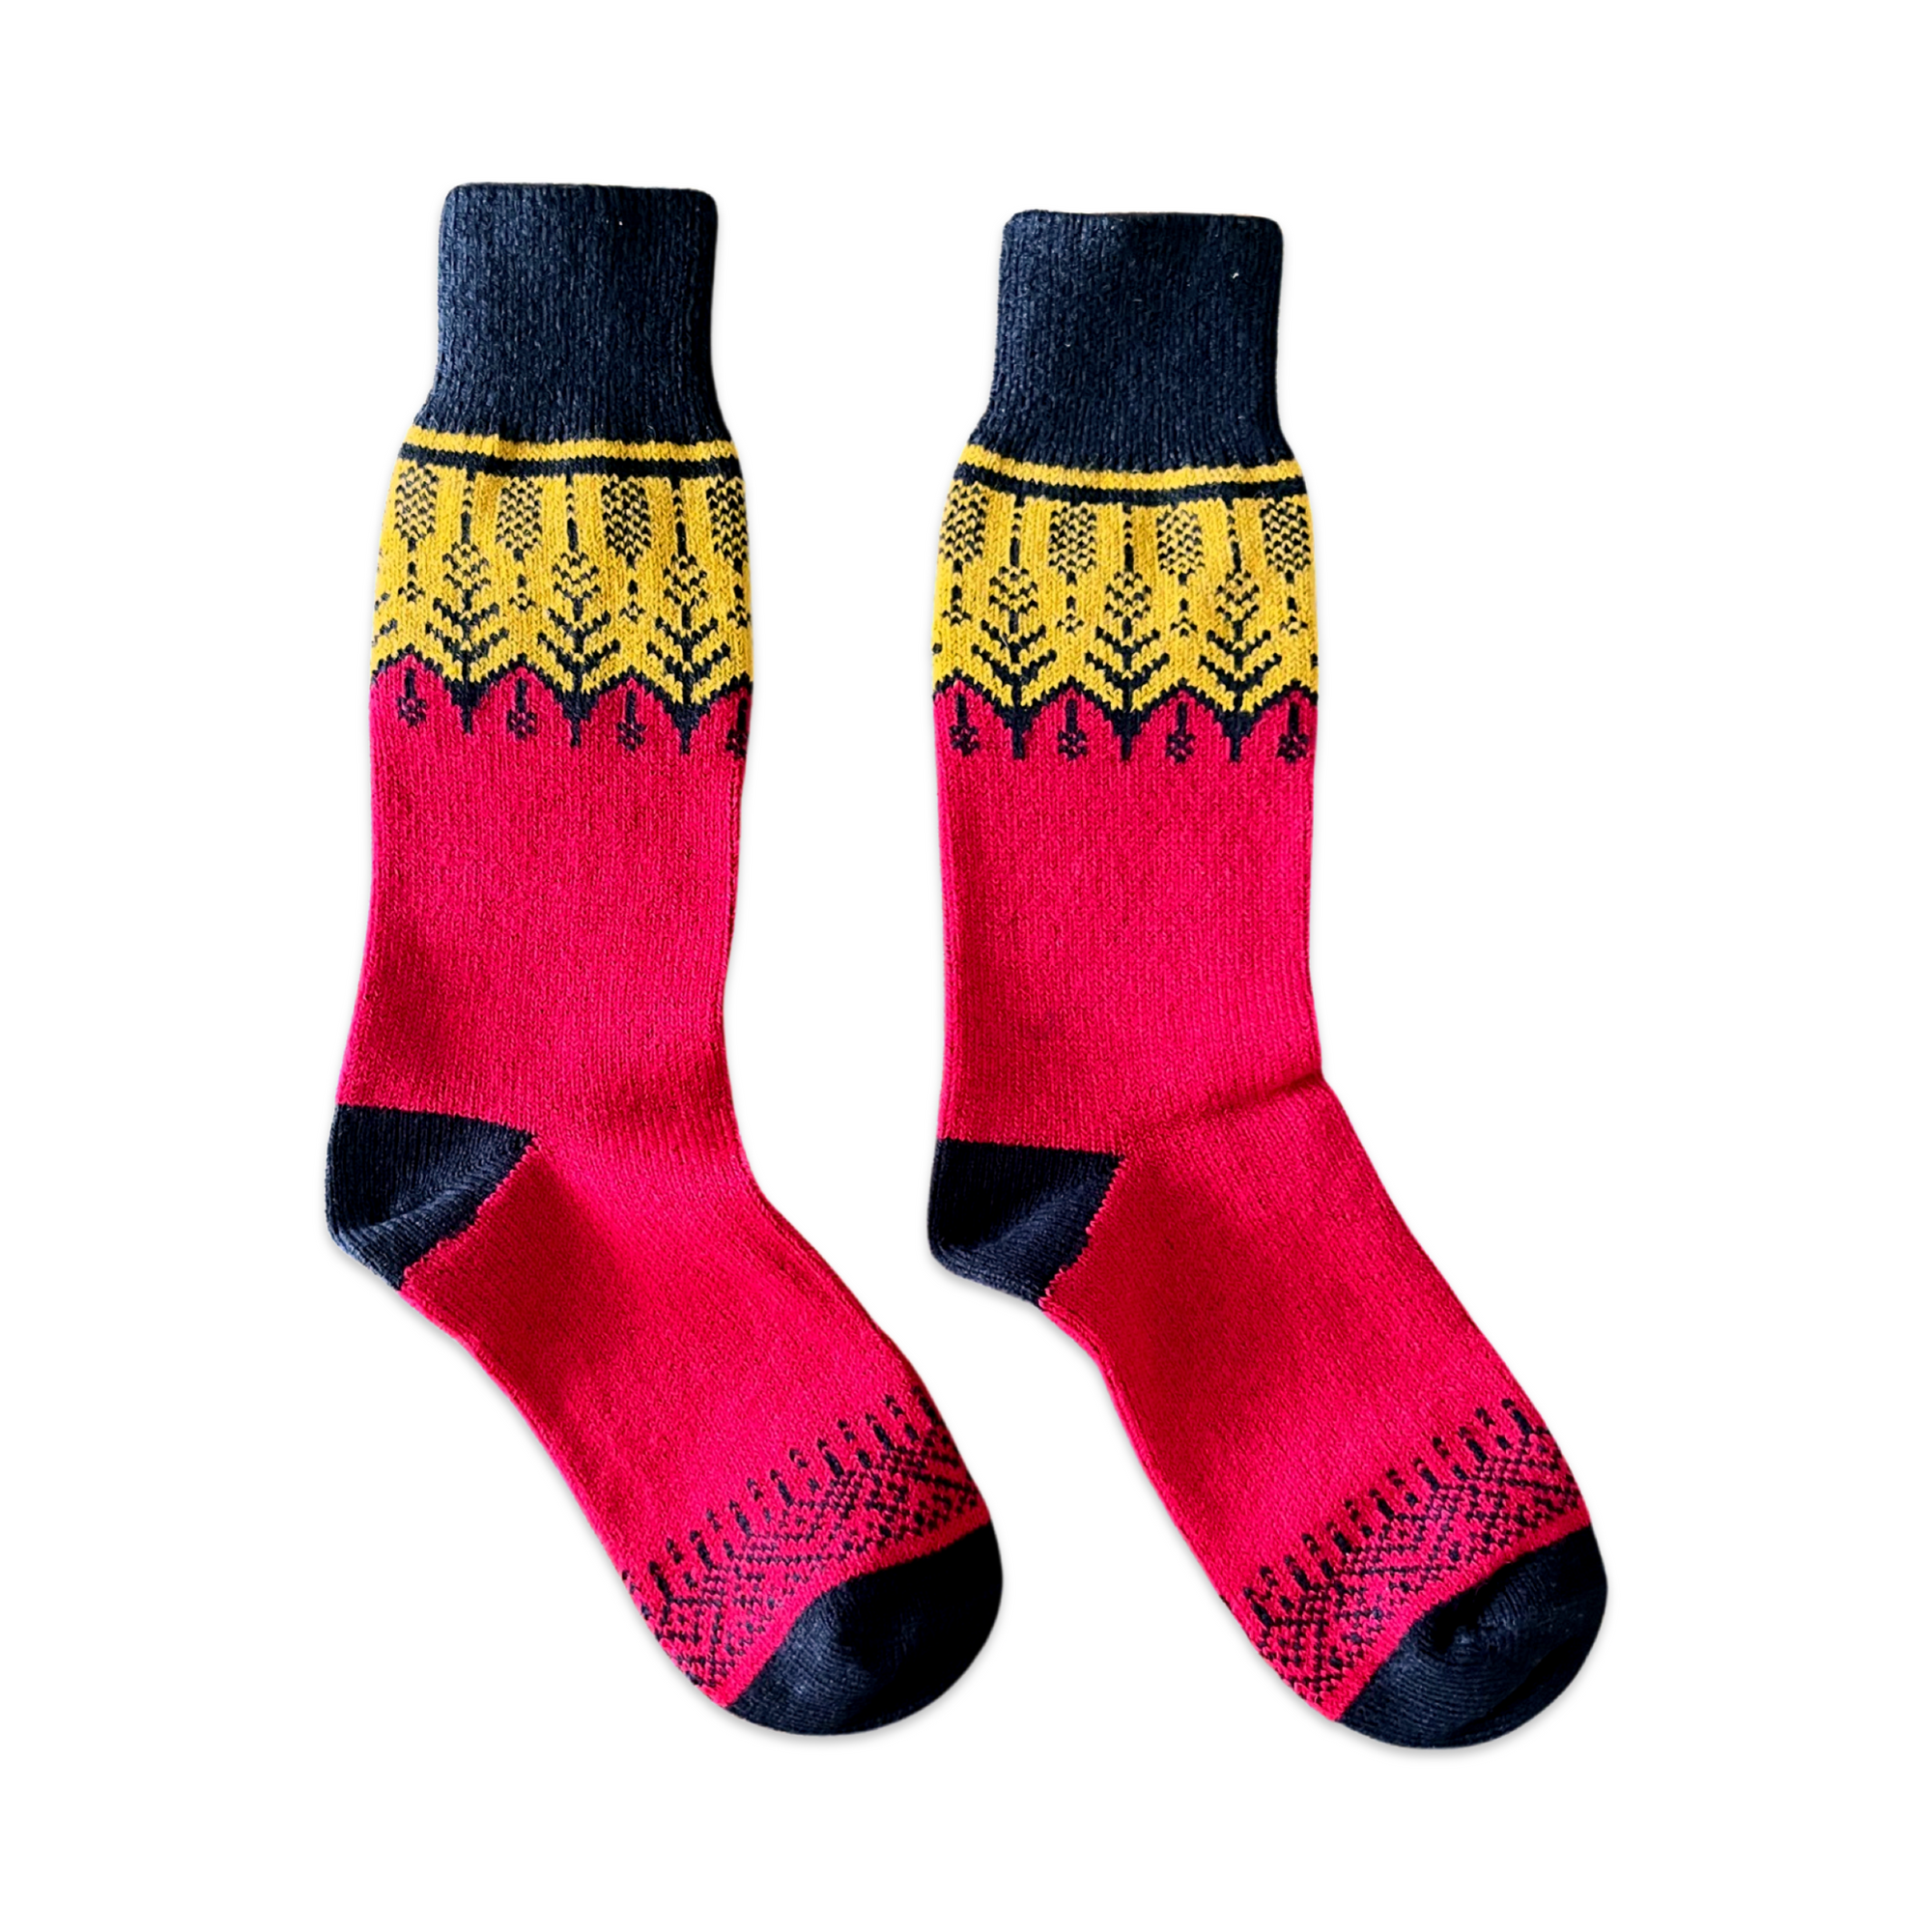 Nordic Socks Merino Wool in PERFORM™ (Spring - Red) - Unisex